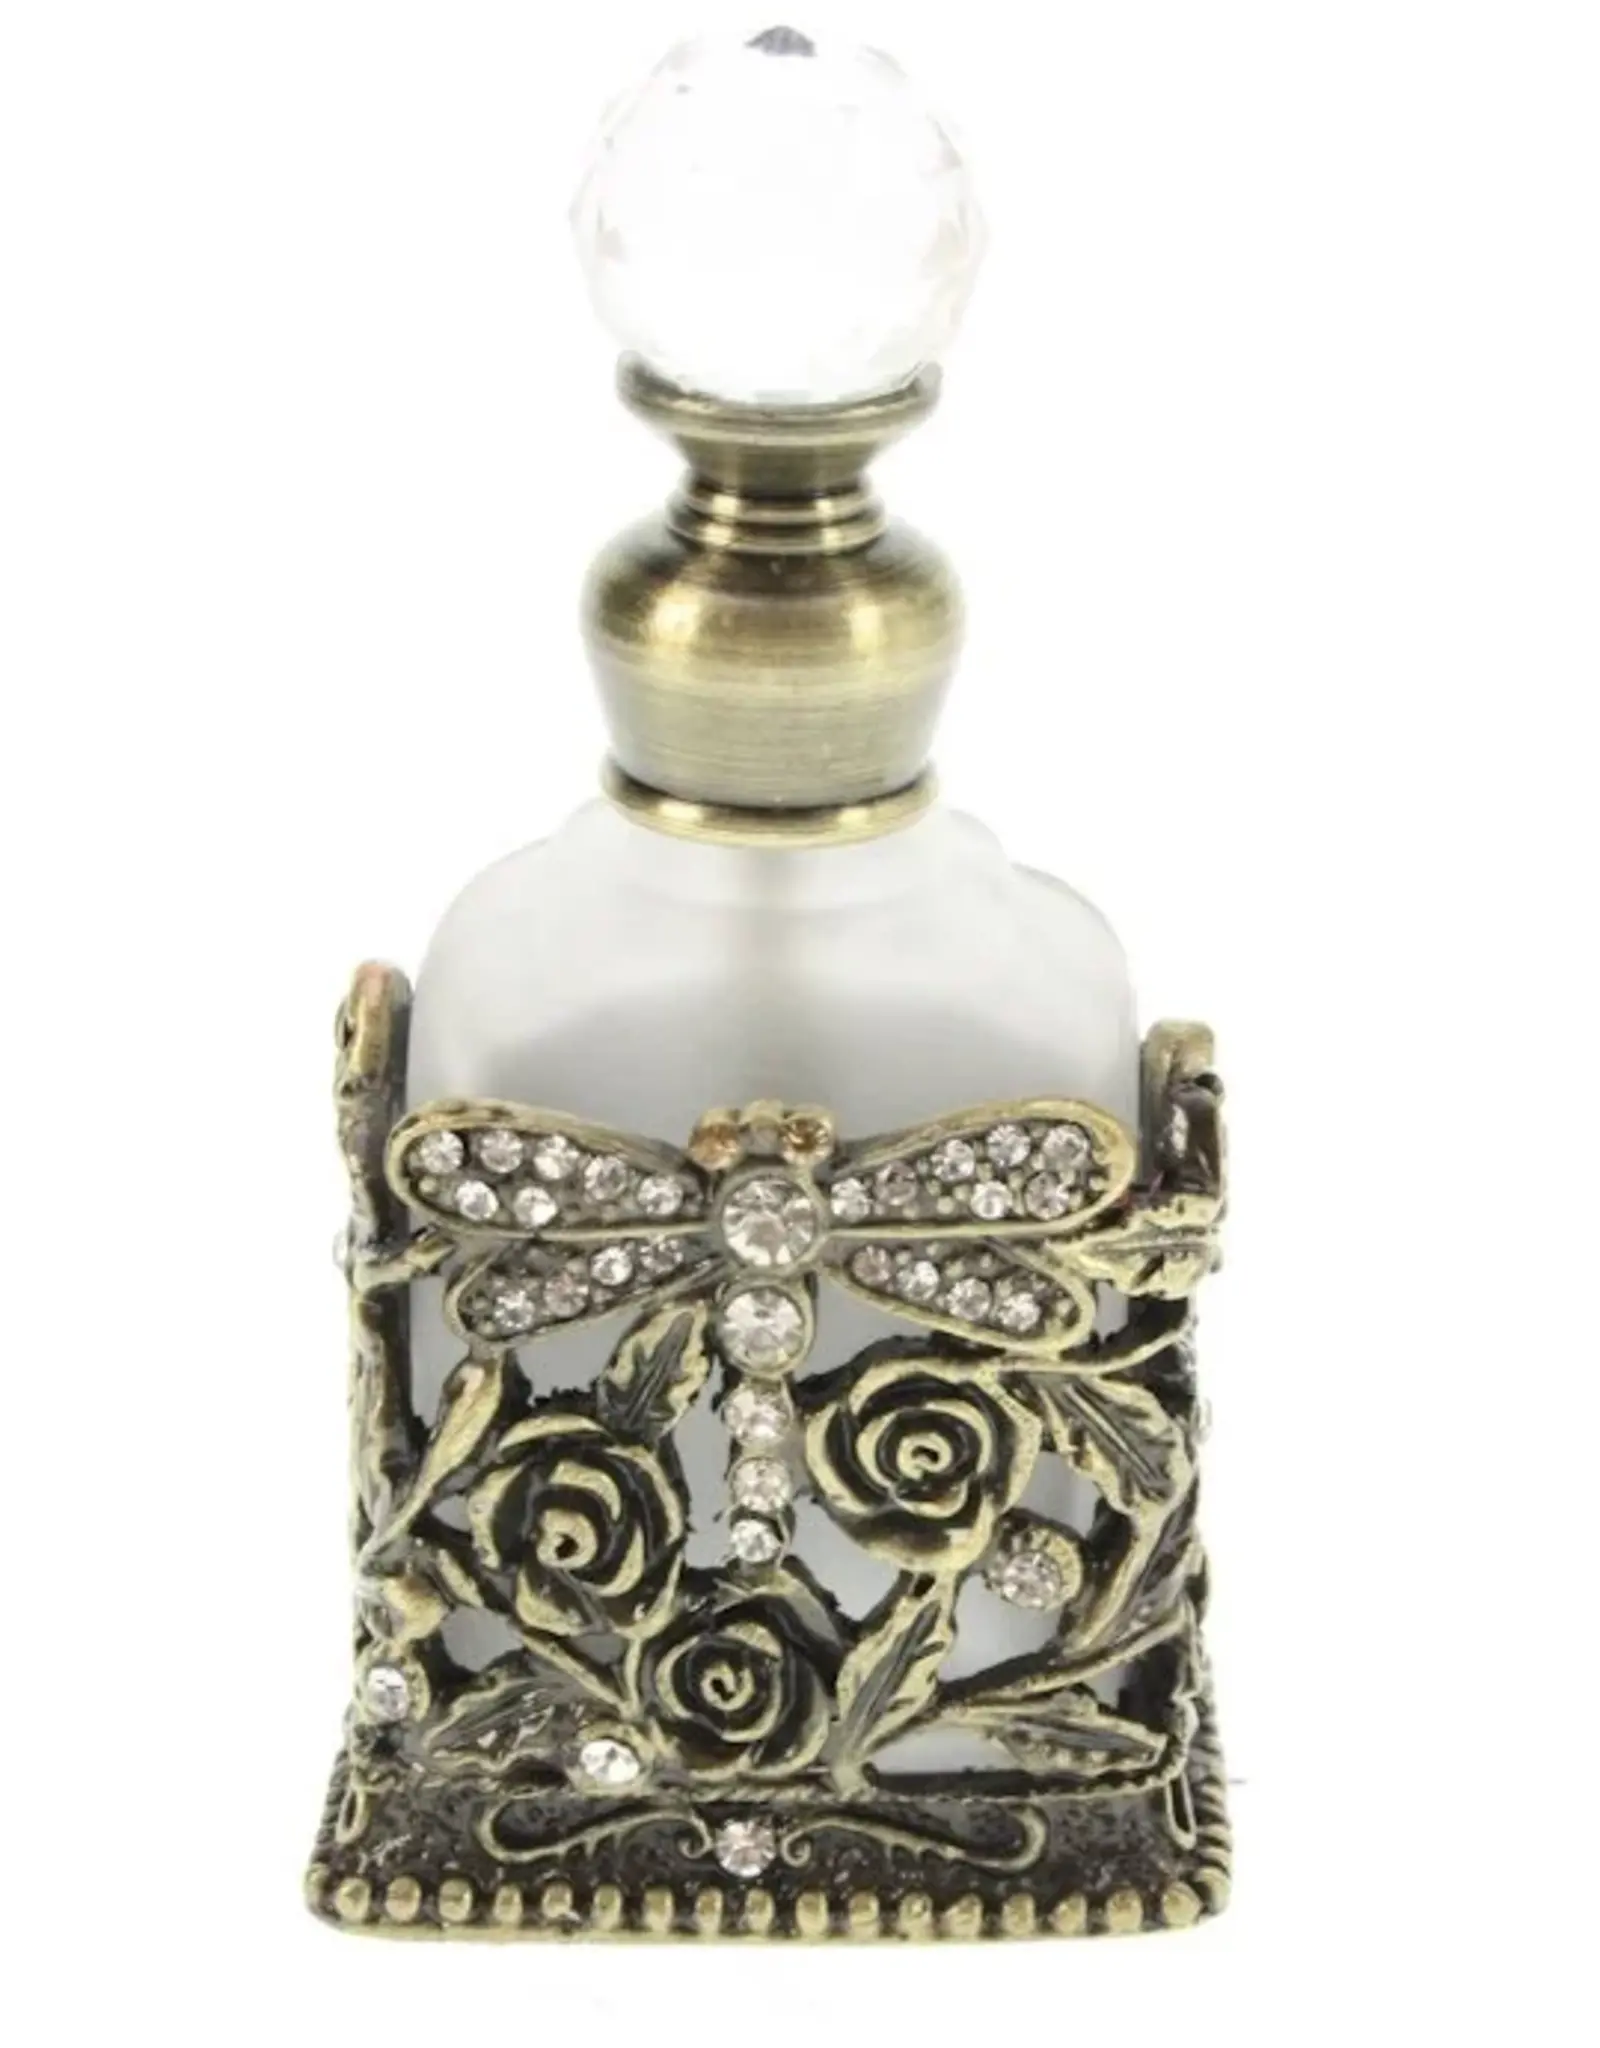 Parfumflesje Libelle antique goudkleurig, opengewerkt